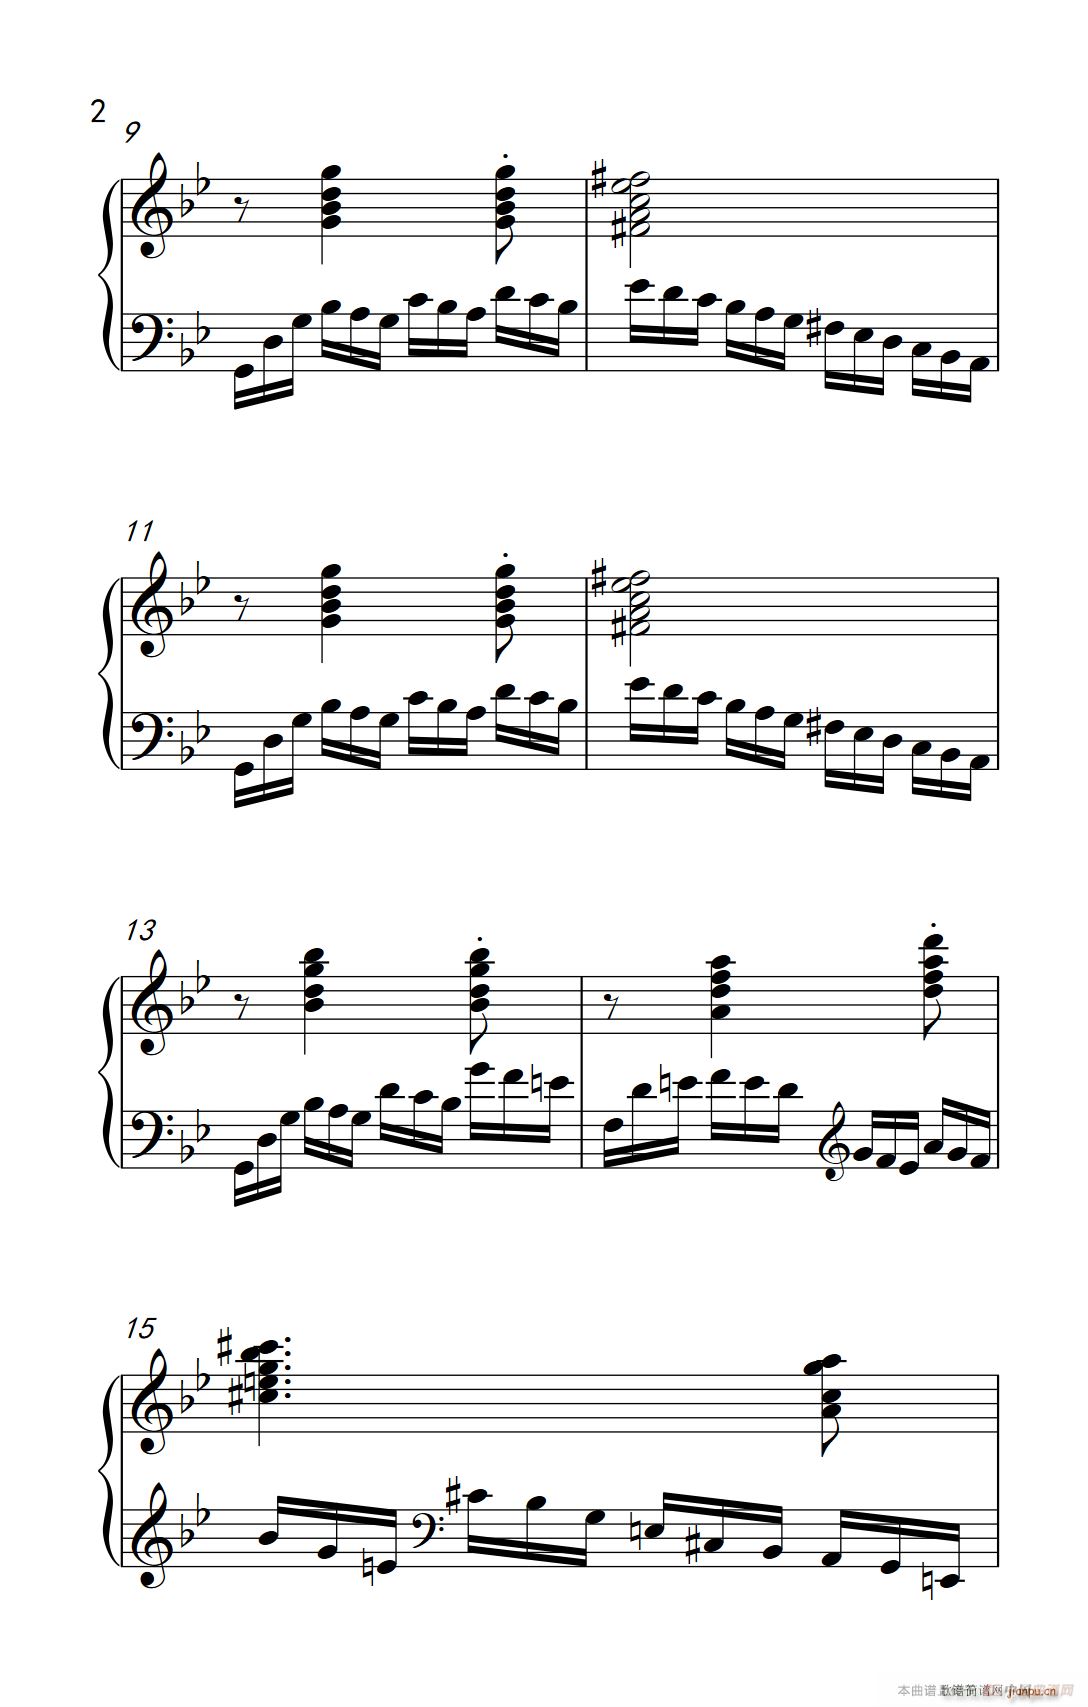 第九级3 练习曲 No 2 中央音乐学院 钢琴 业余 考级教程 7 9级 2